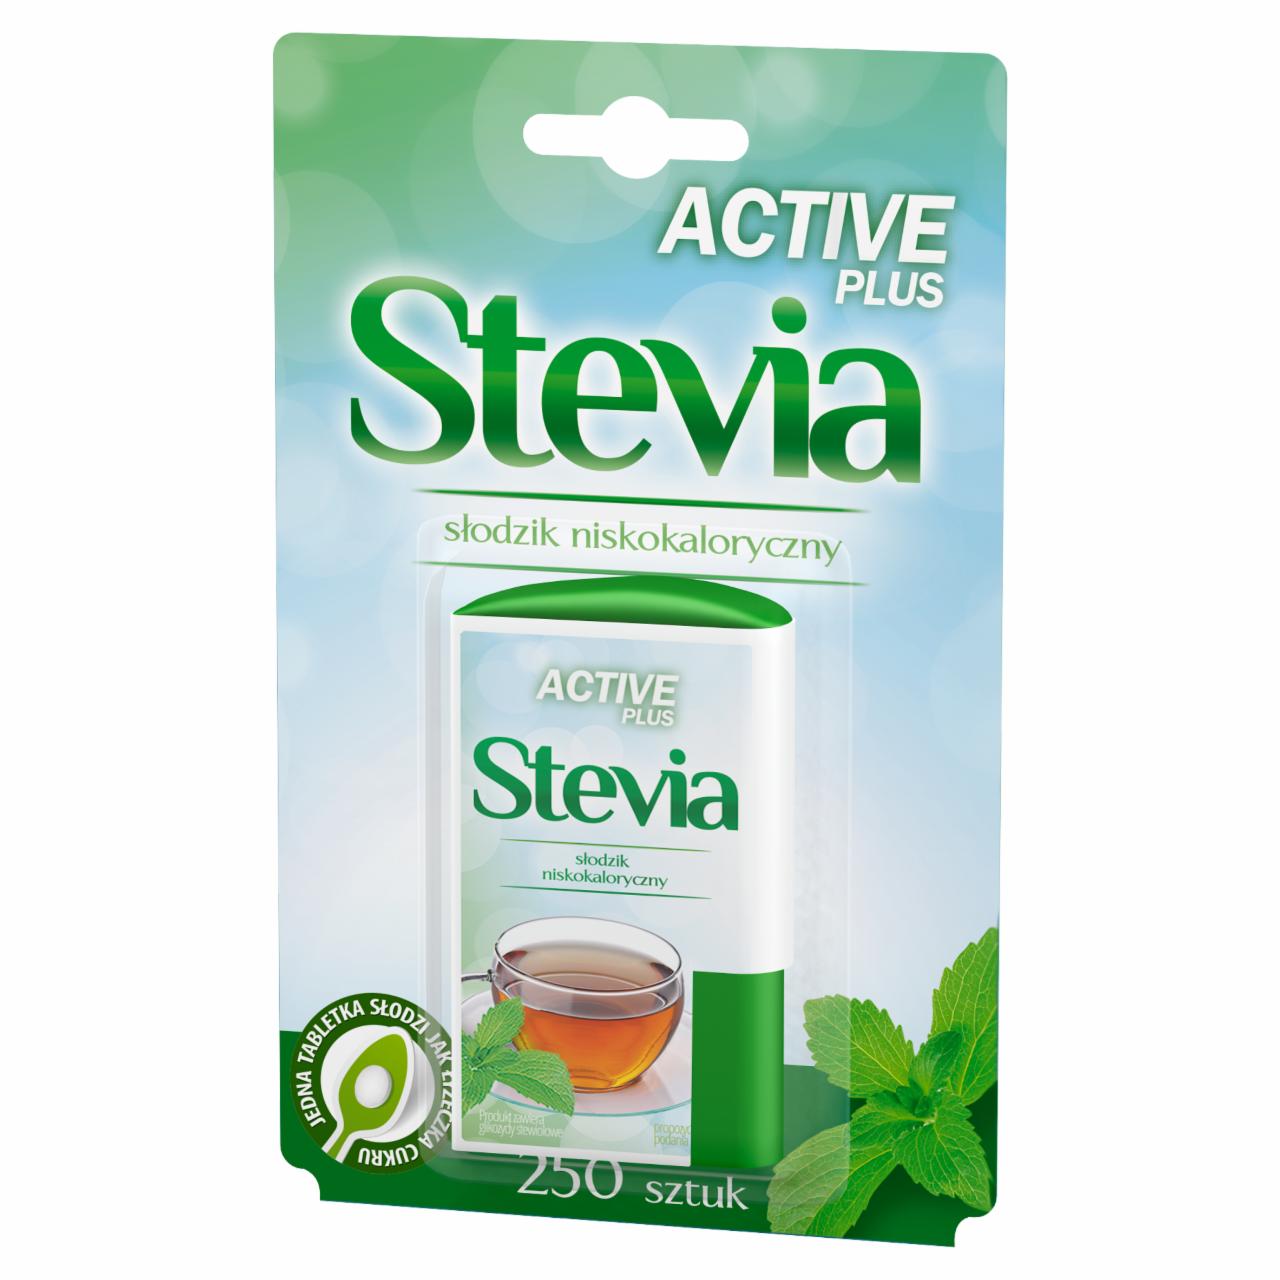 Zdjęcia - Active Plus Stevia Słodzik niskokaloryczny 13 g (250 tabletek)